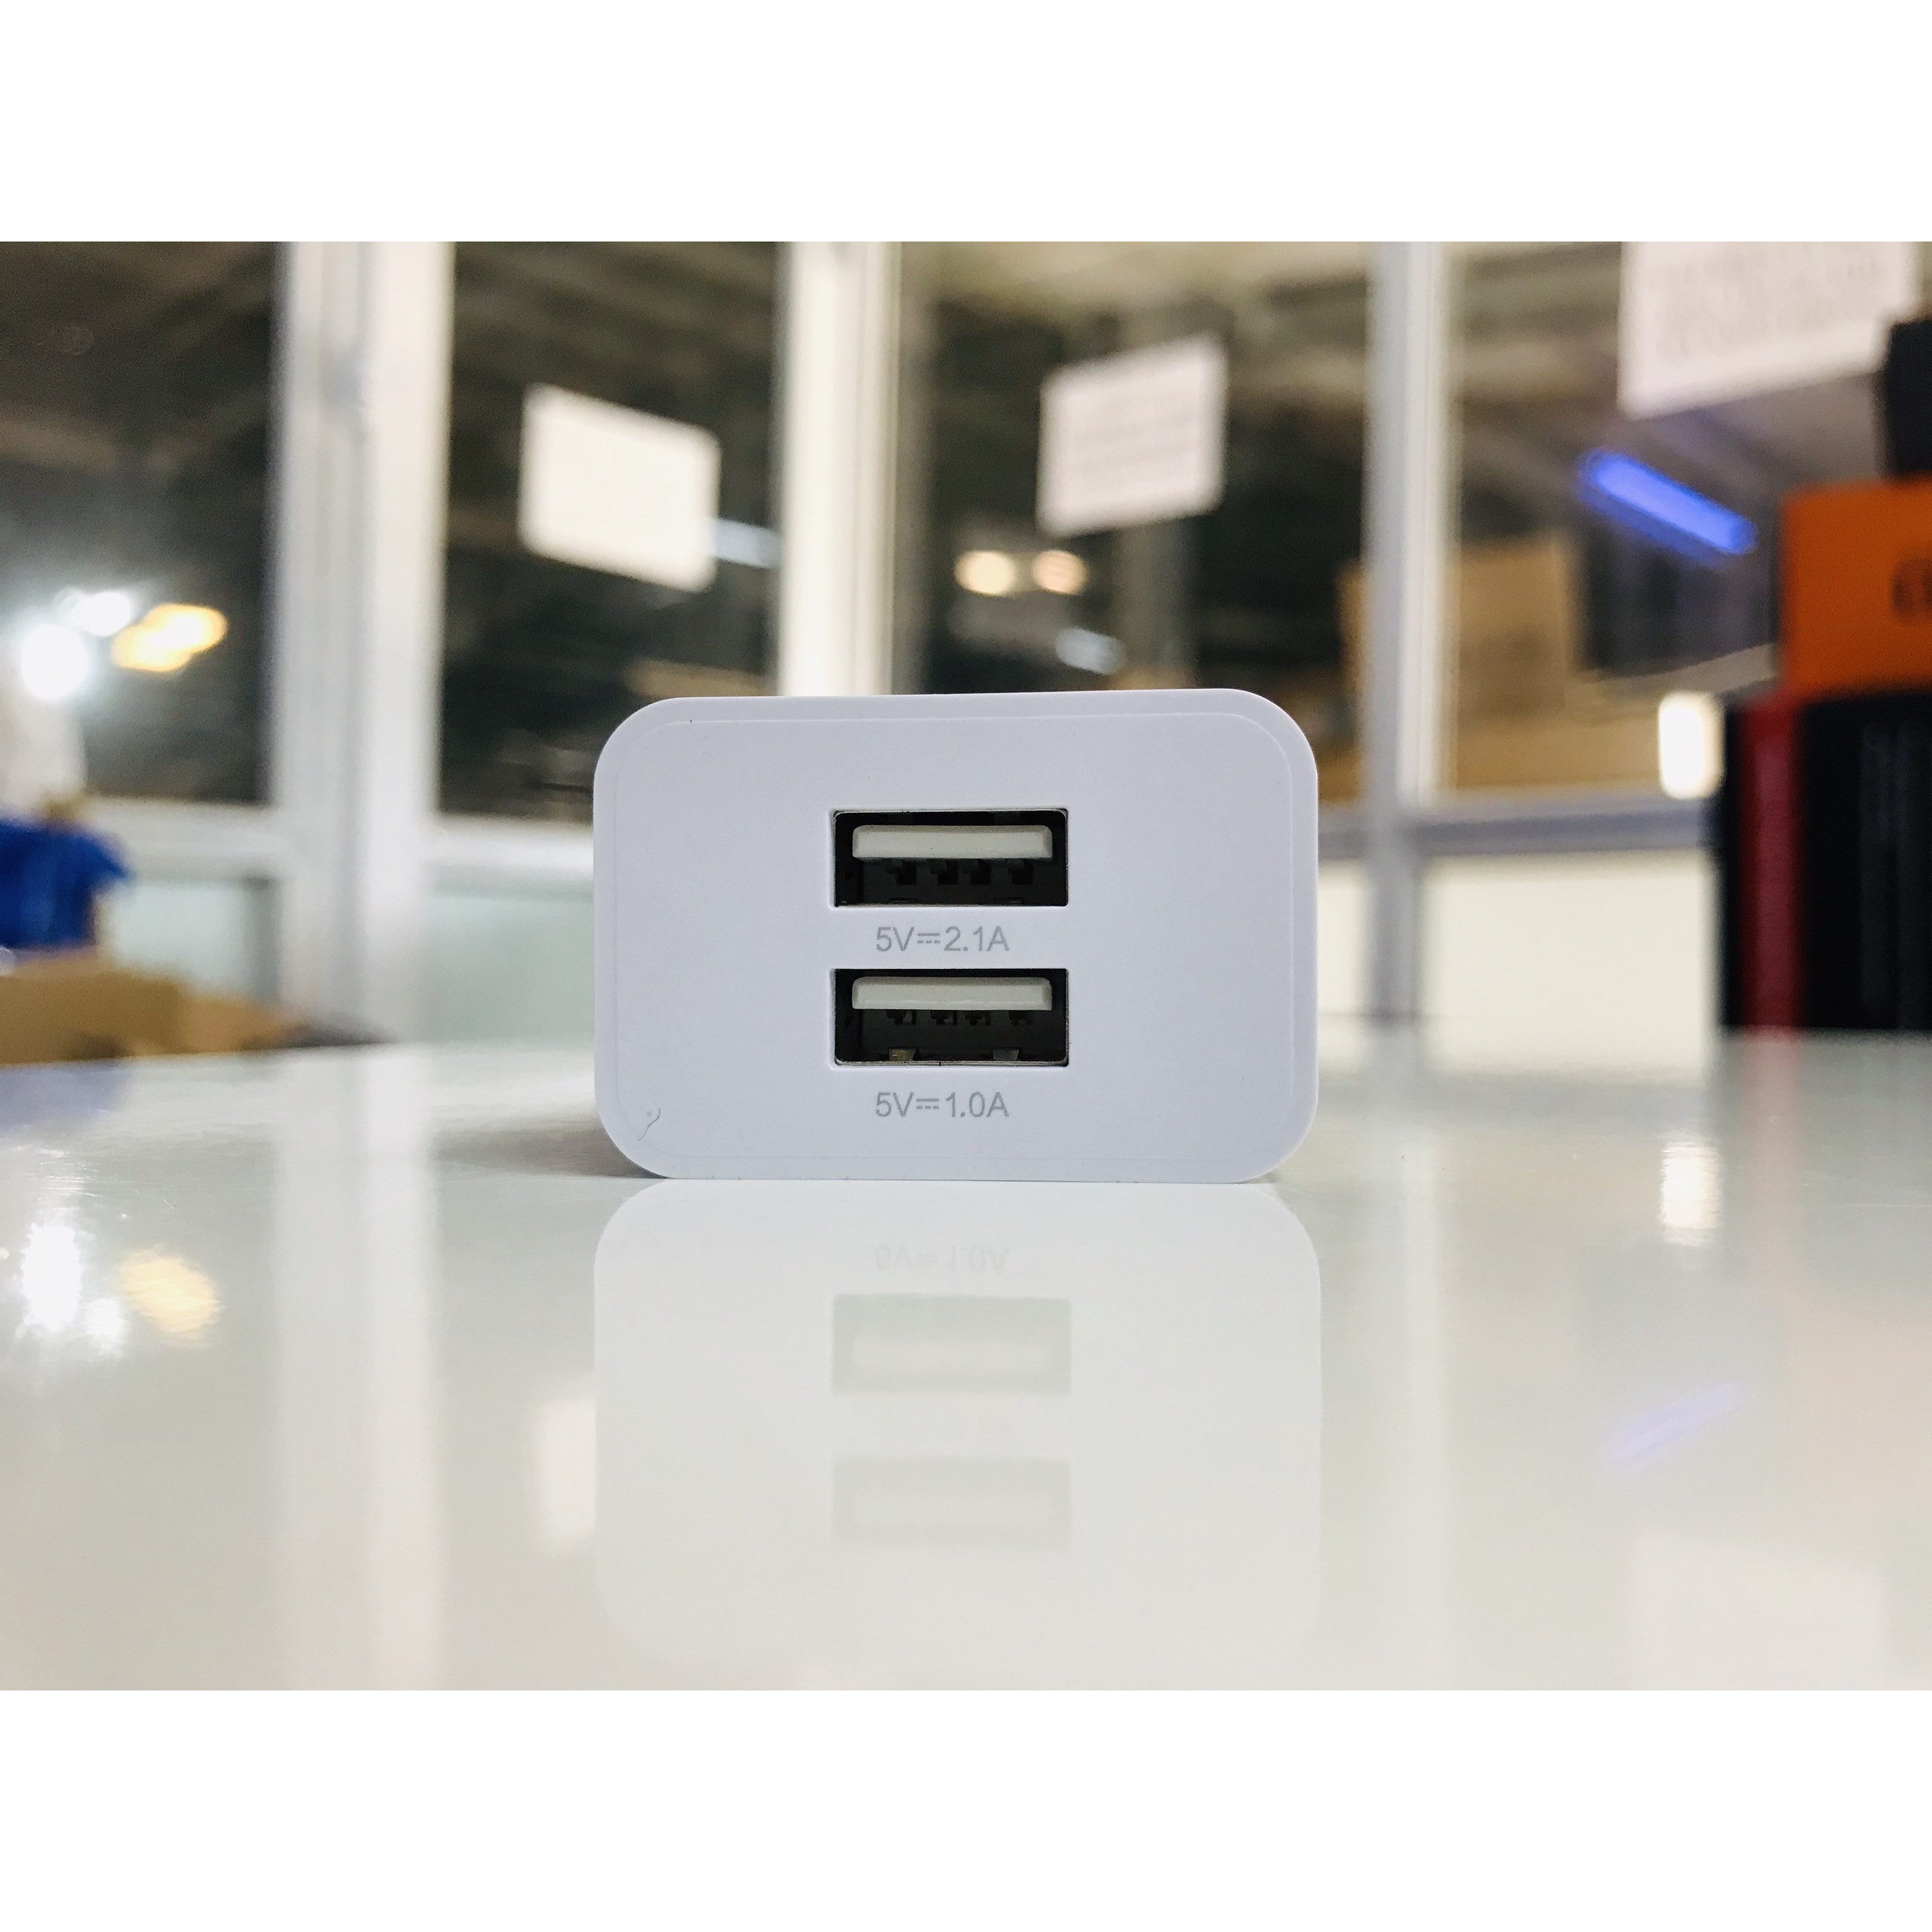 Củ sạc Dual USB Charger 2.1A , 15.5W  (Sạc nhanh 2.1A cho iPHONE, iPAD) (RY-U02) trắng _ Hàng chính hãng